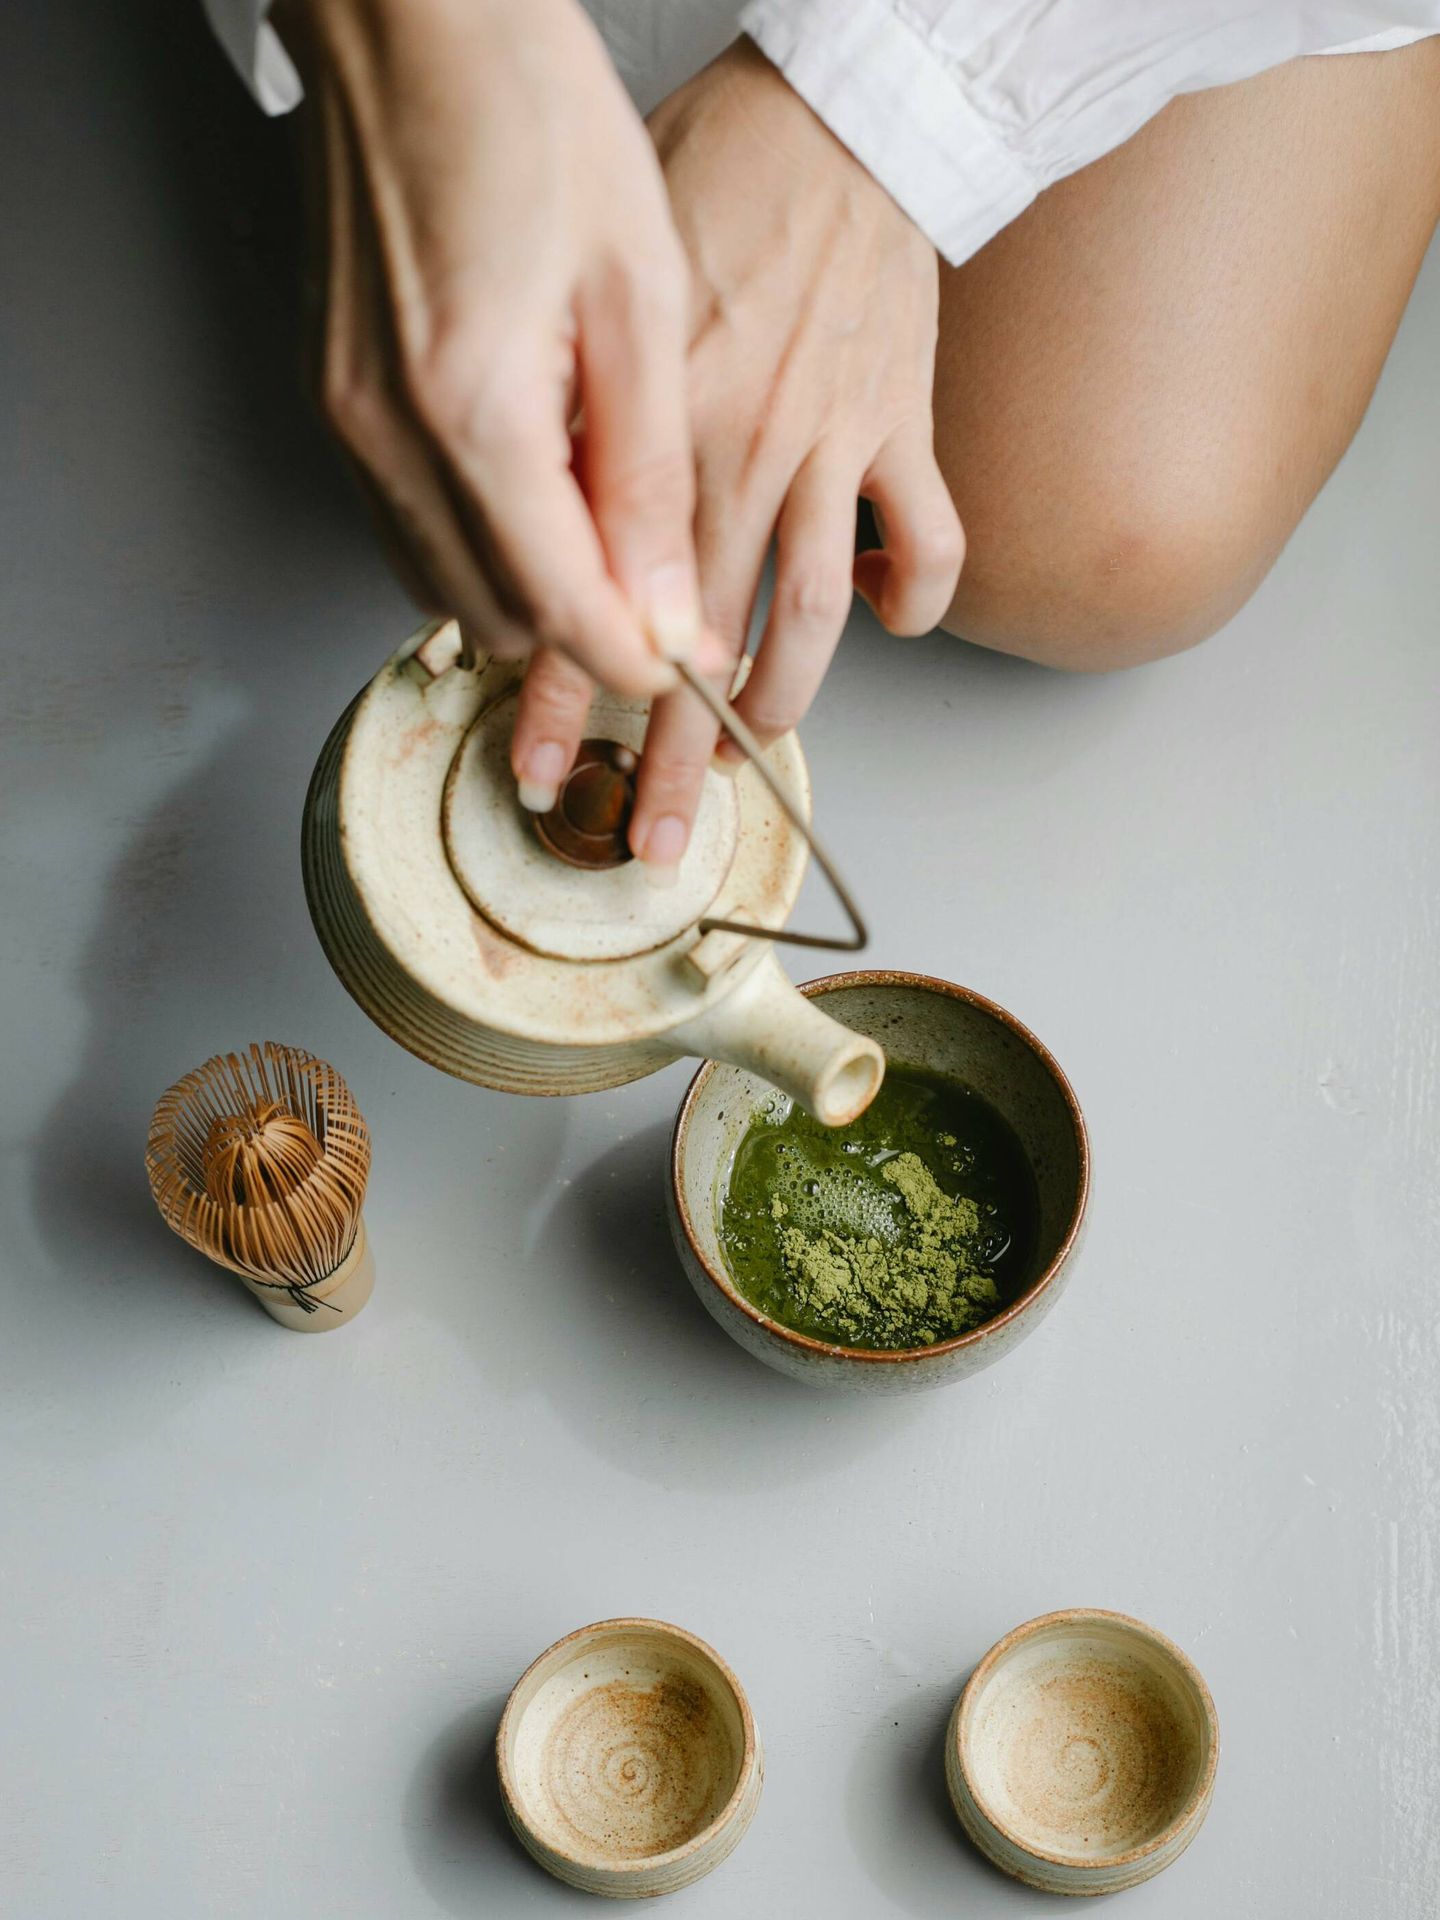 El té verde es muy típico de la dieta japonesa. (Pexels/Charlotte May)